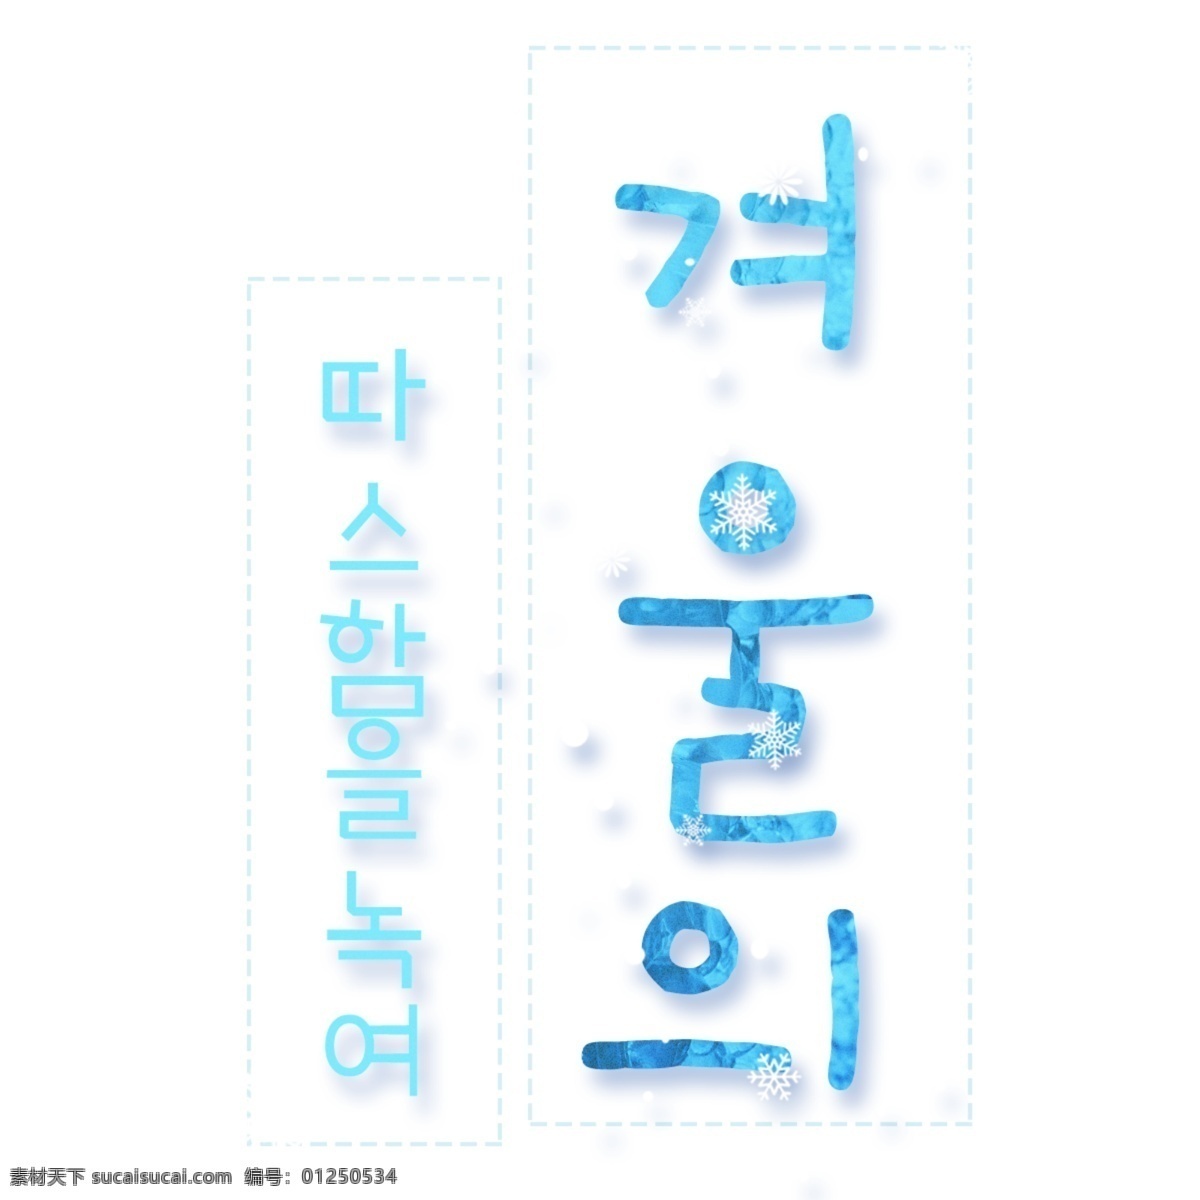 韩国 人 性格 温暖 融化 冬天 韩国人 韩国字体 可爱 字形 冬季 全球绿色新品 熔化温度